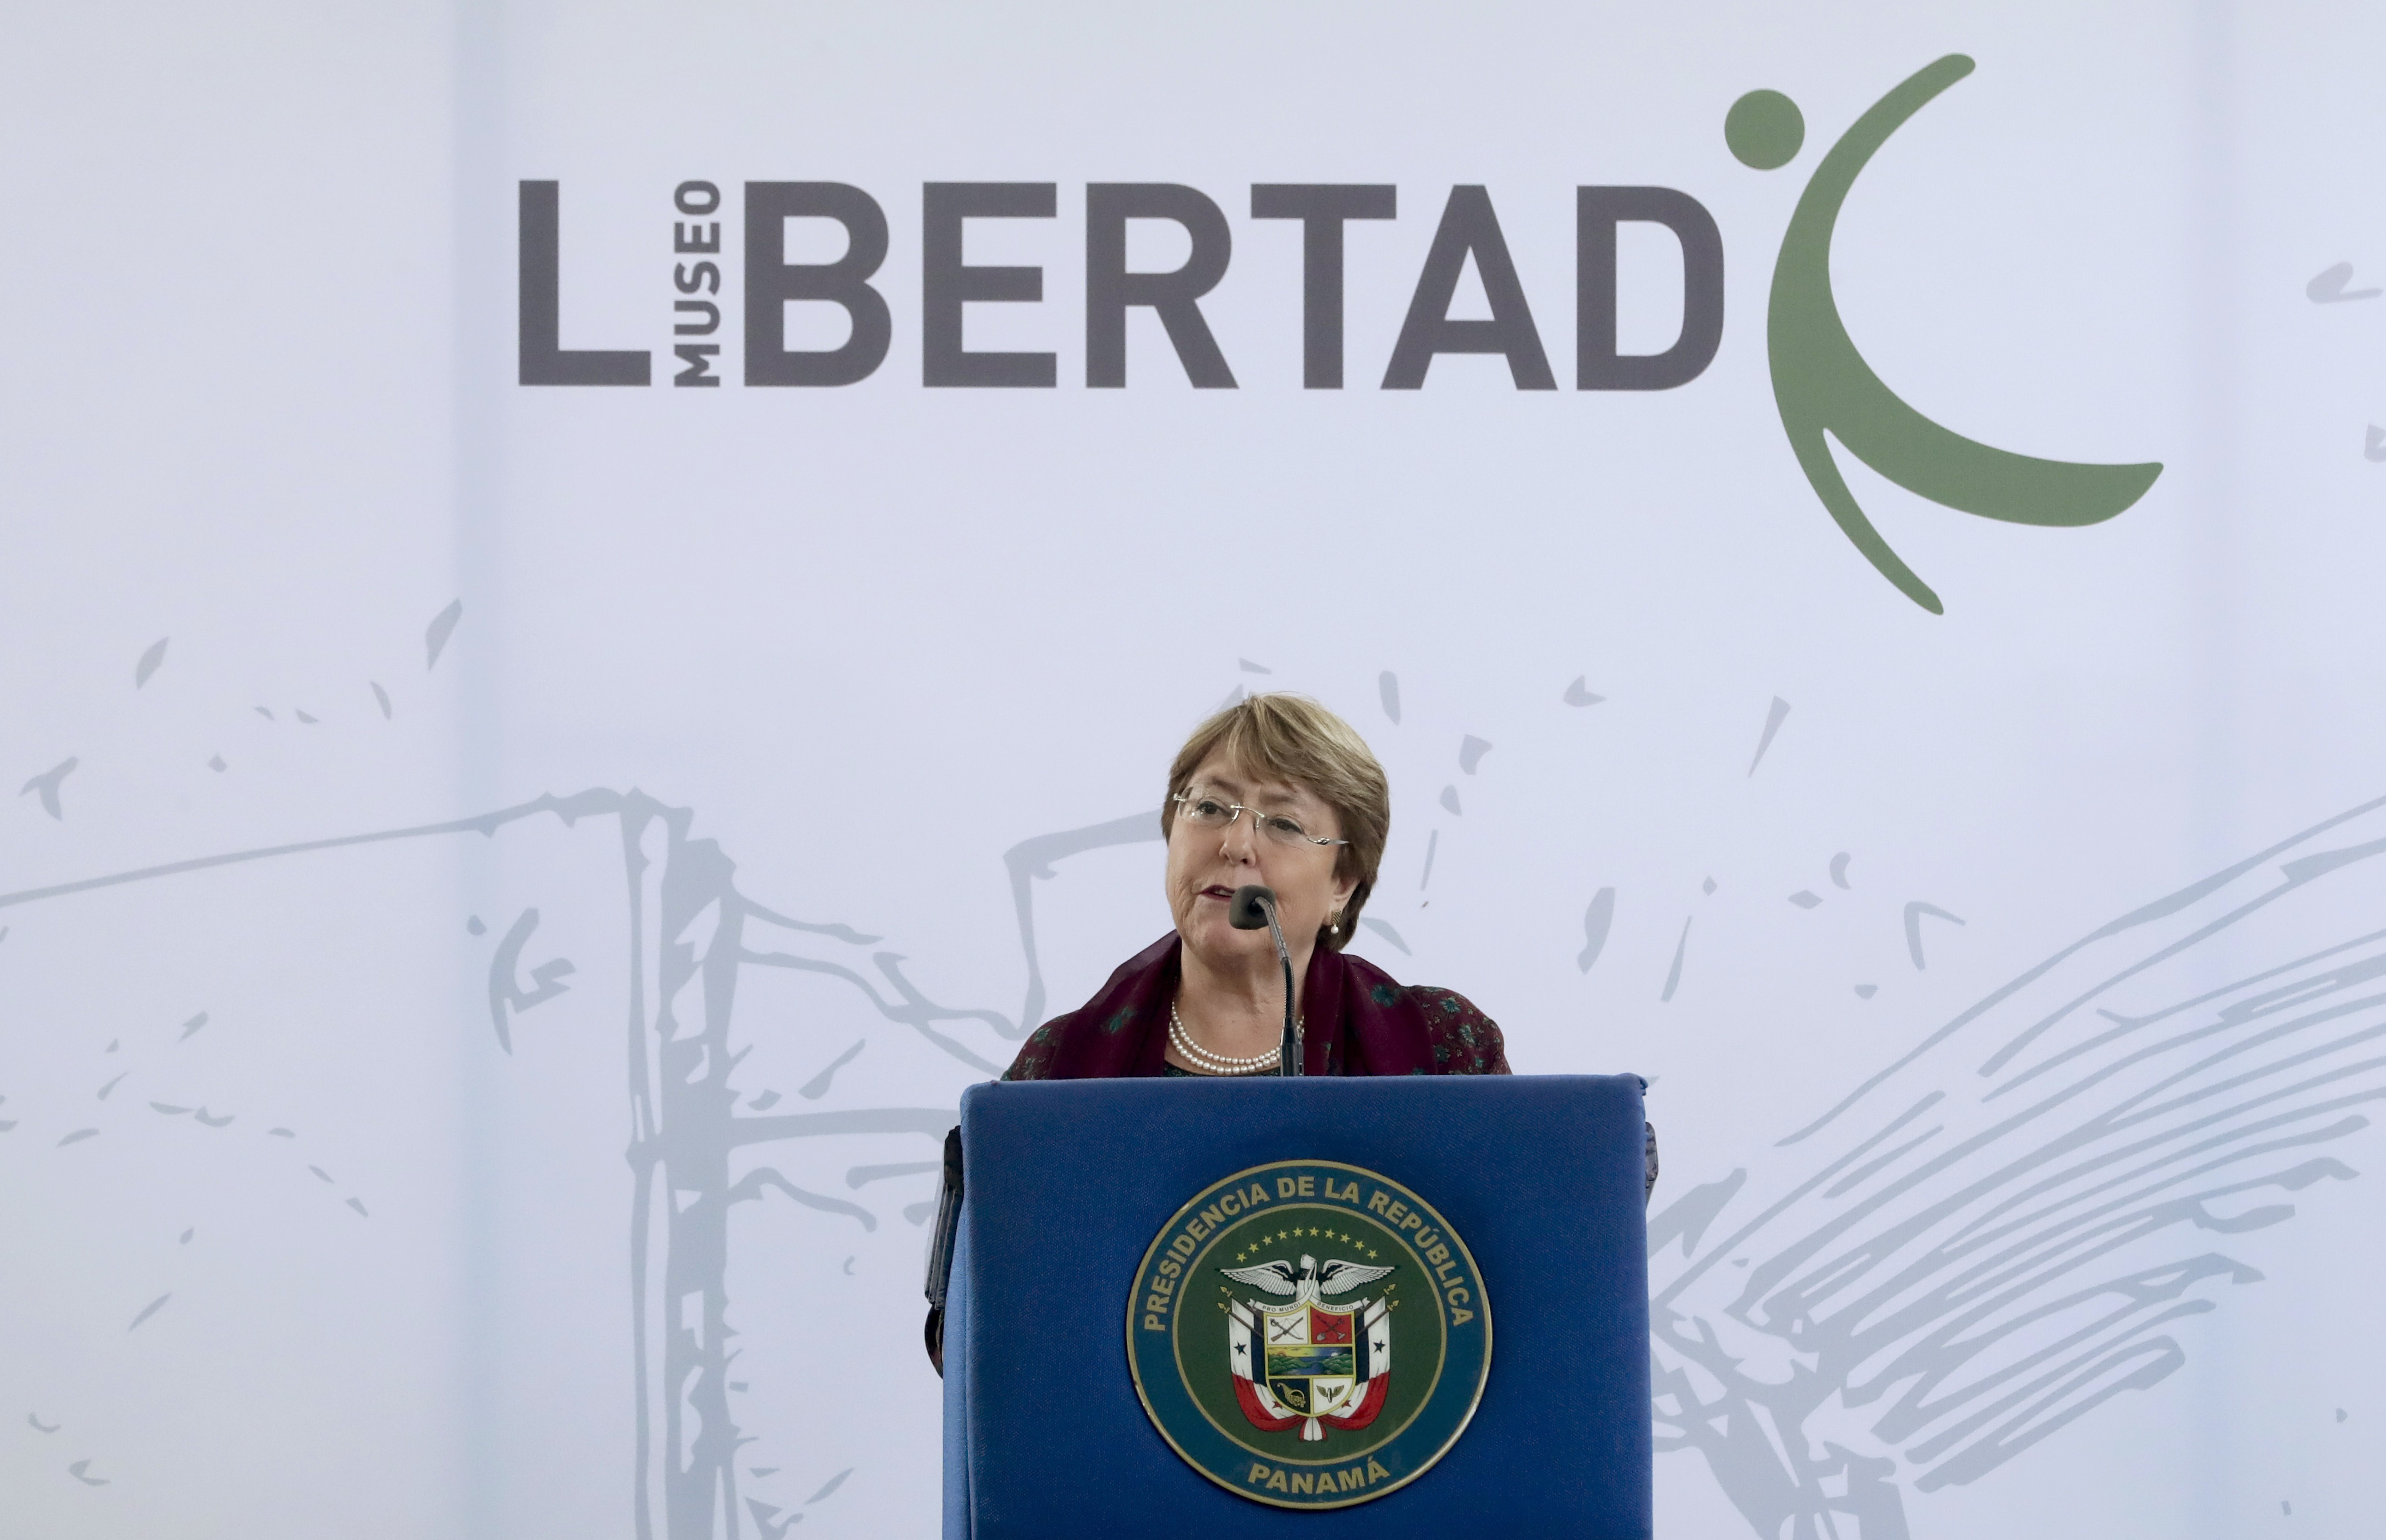 La Alta Comisionada de las Naciones Unidas para los Derechos Humanos, Michelle Bachelet, inauguró hoy oficialmente el Museo de la Libertad y los Derechos Humanos en Panamá.